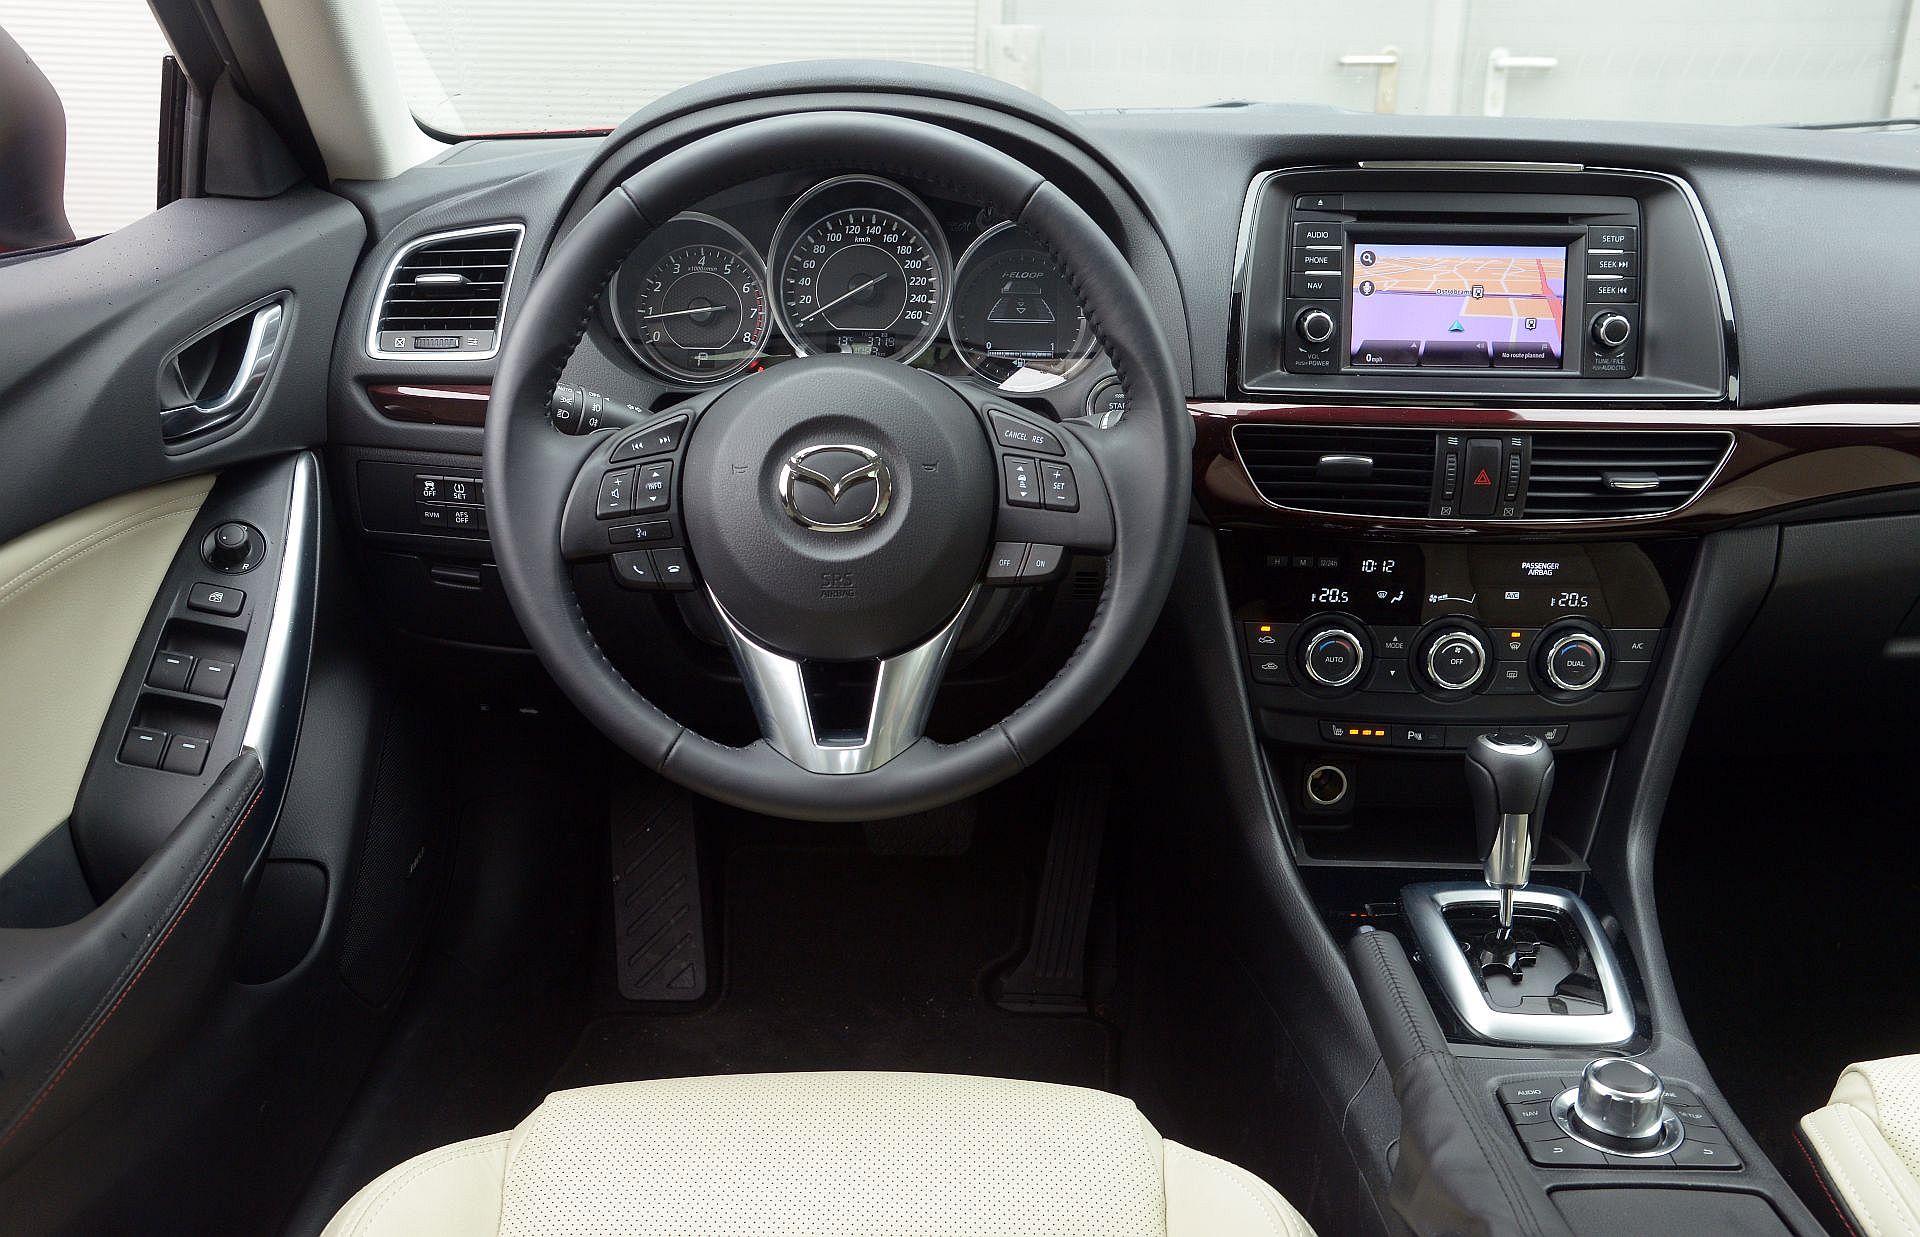 Używana Mazda 6 Iii (Gj/Gl; Od 2012 R.) - Opinie, Dane Techniczne, Typowe Usterki